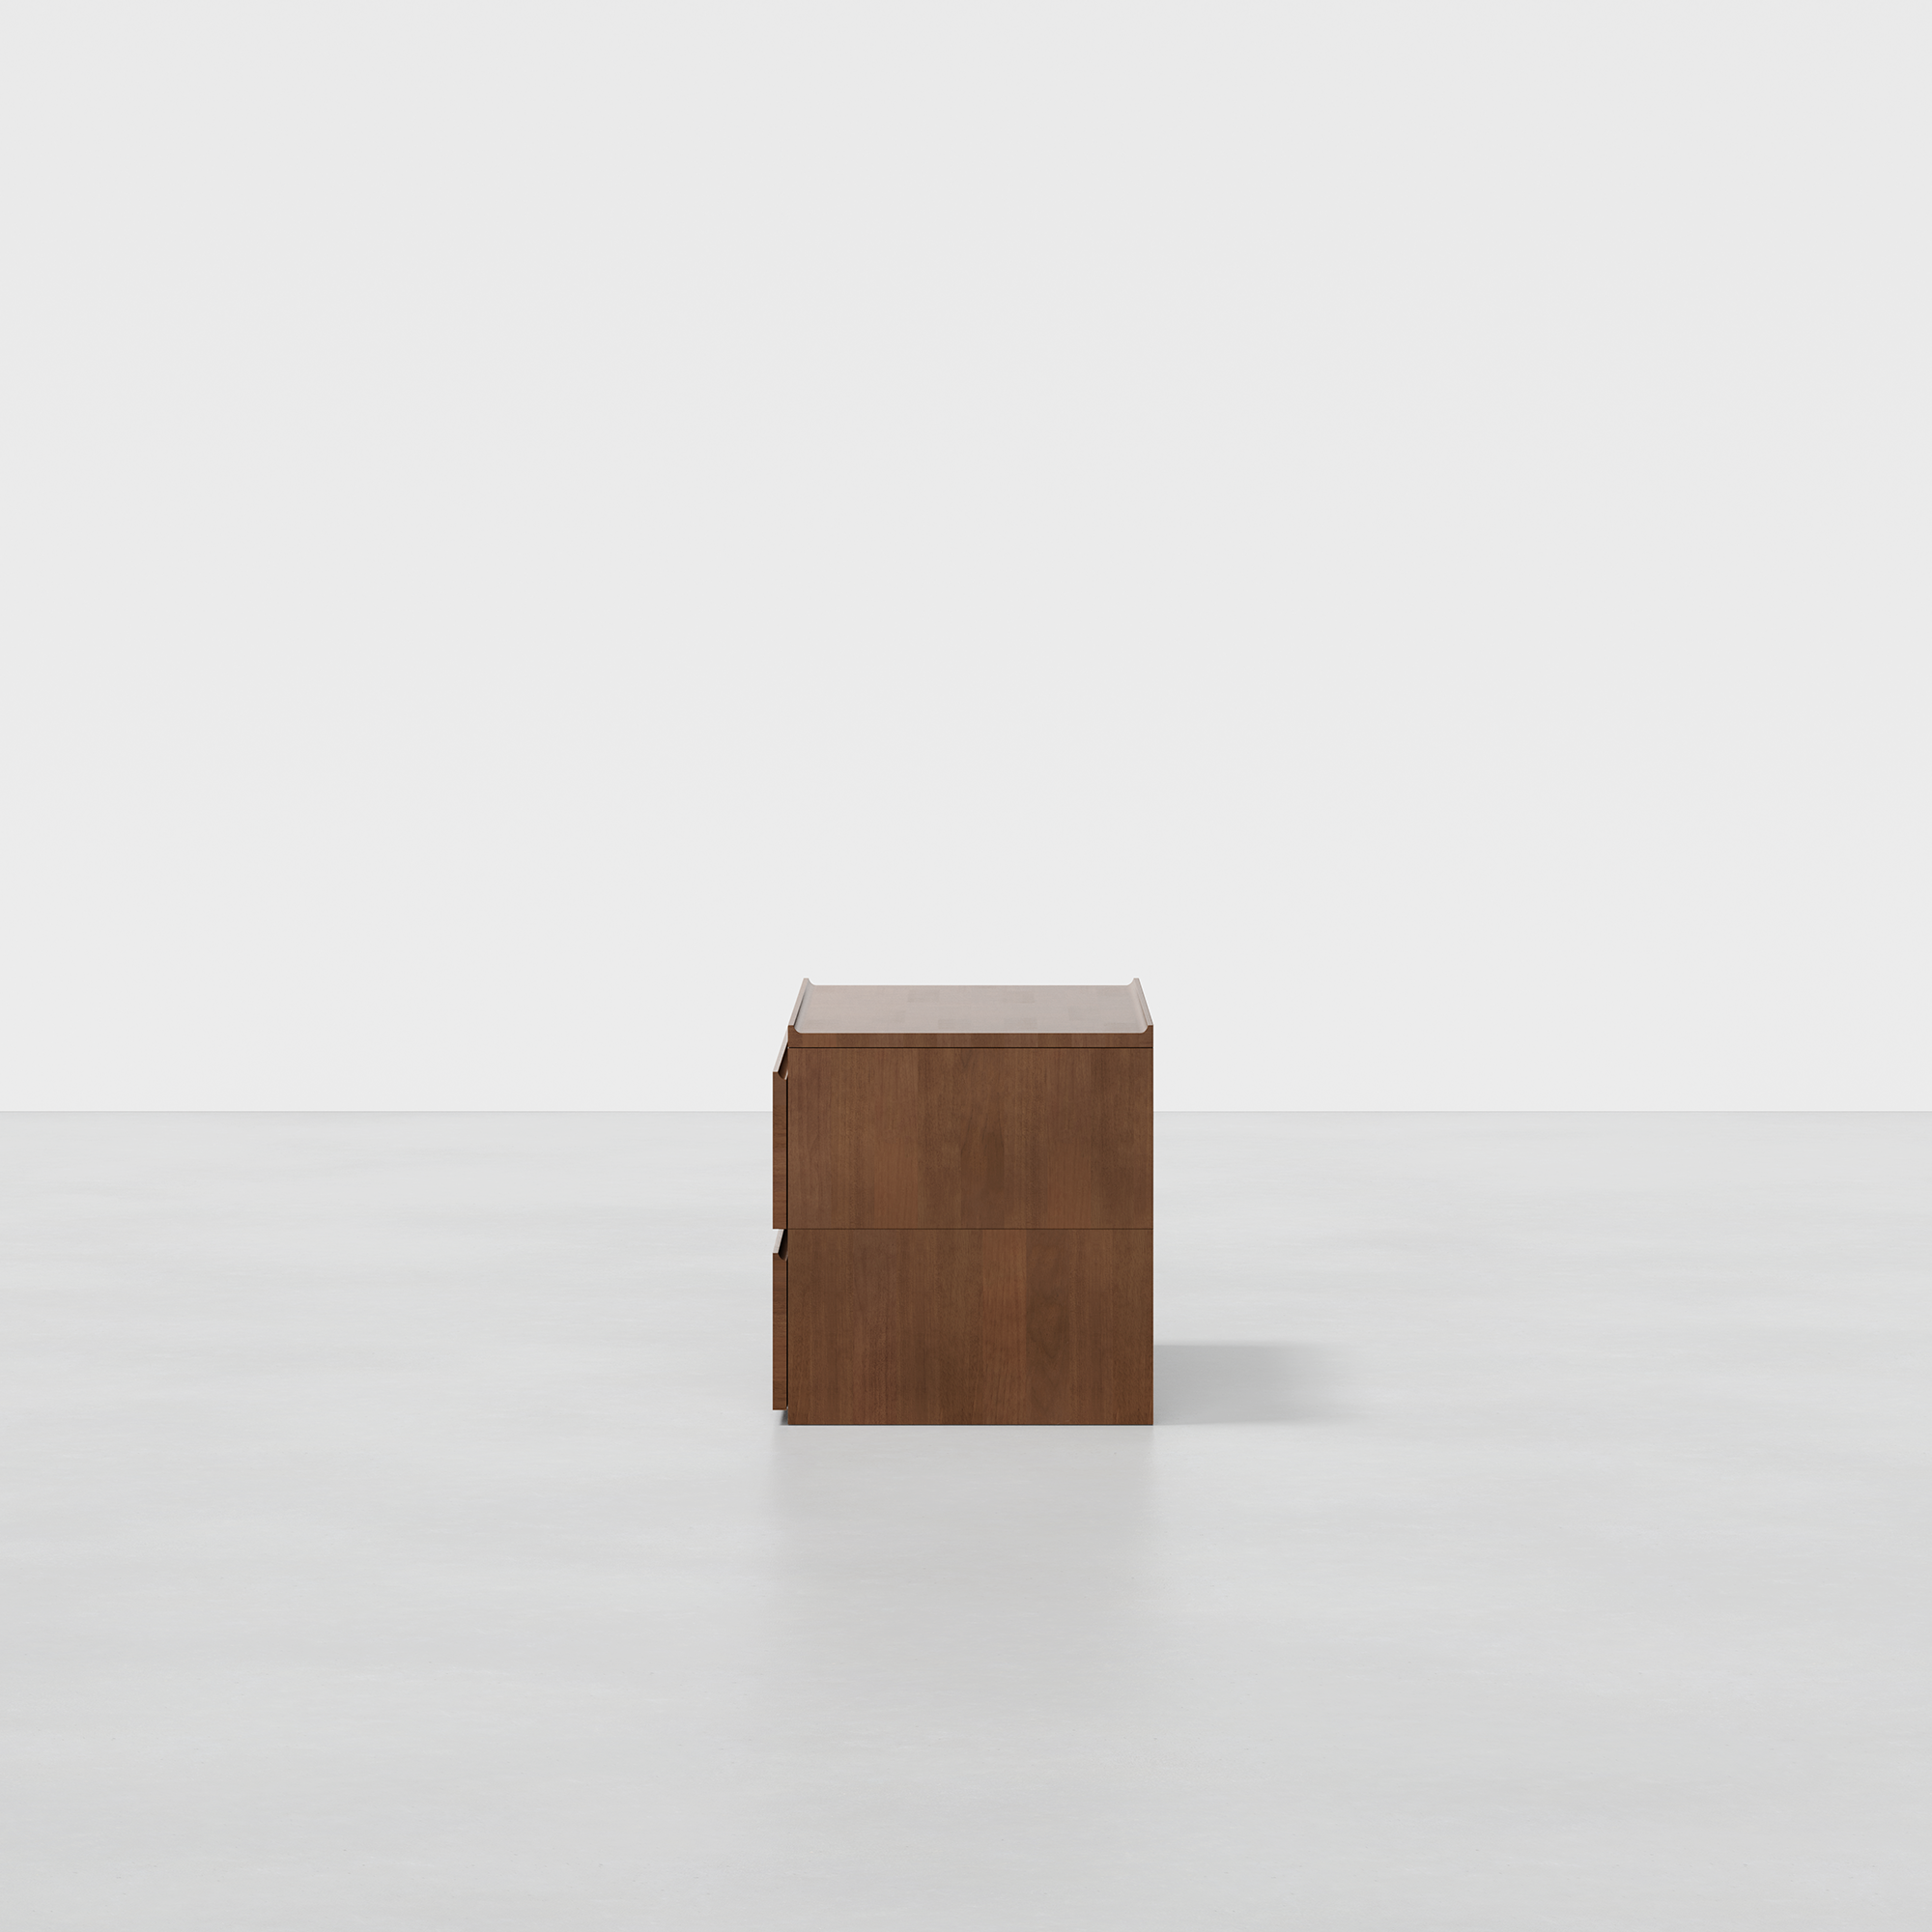 PDP Image: The Dresser (2x1 - Walnut) - Render - Side